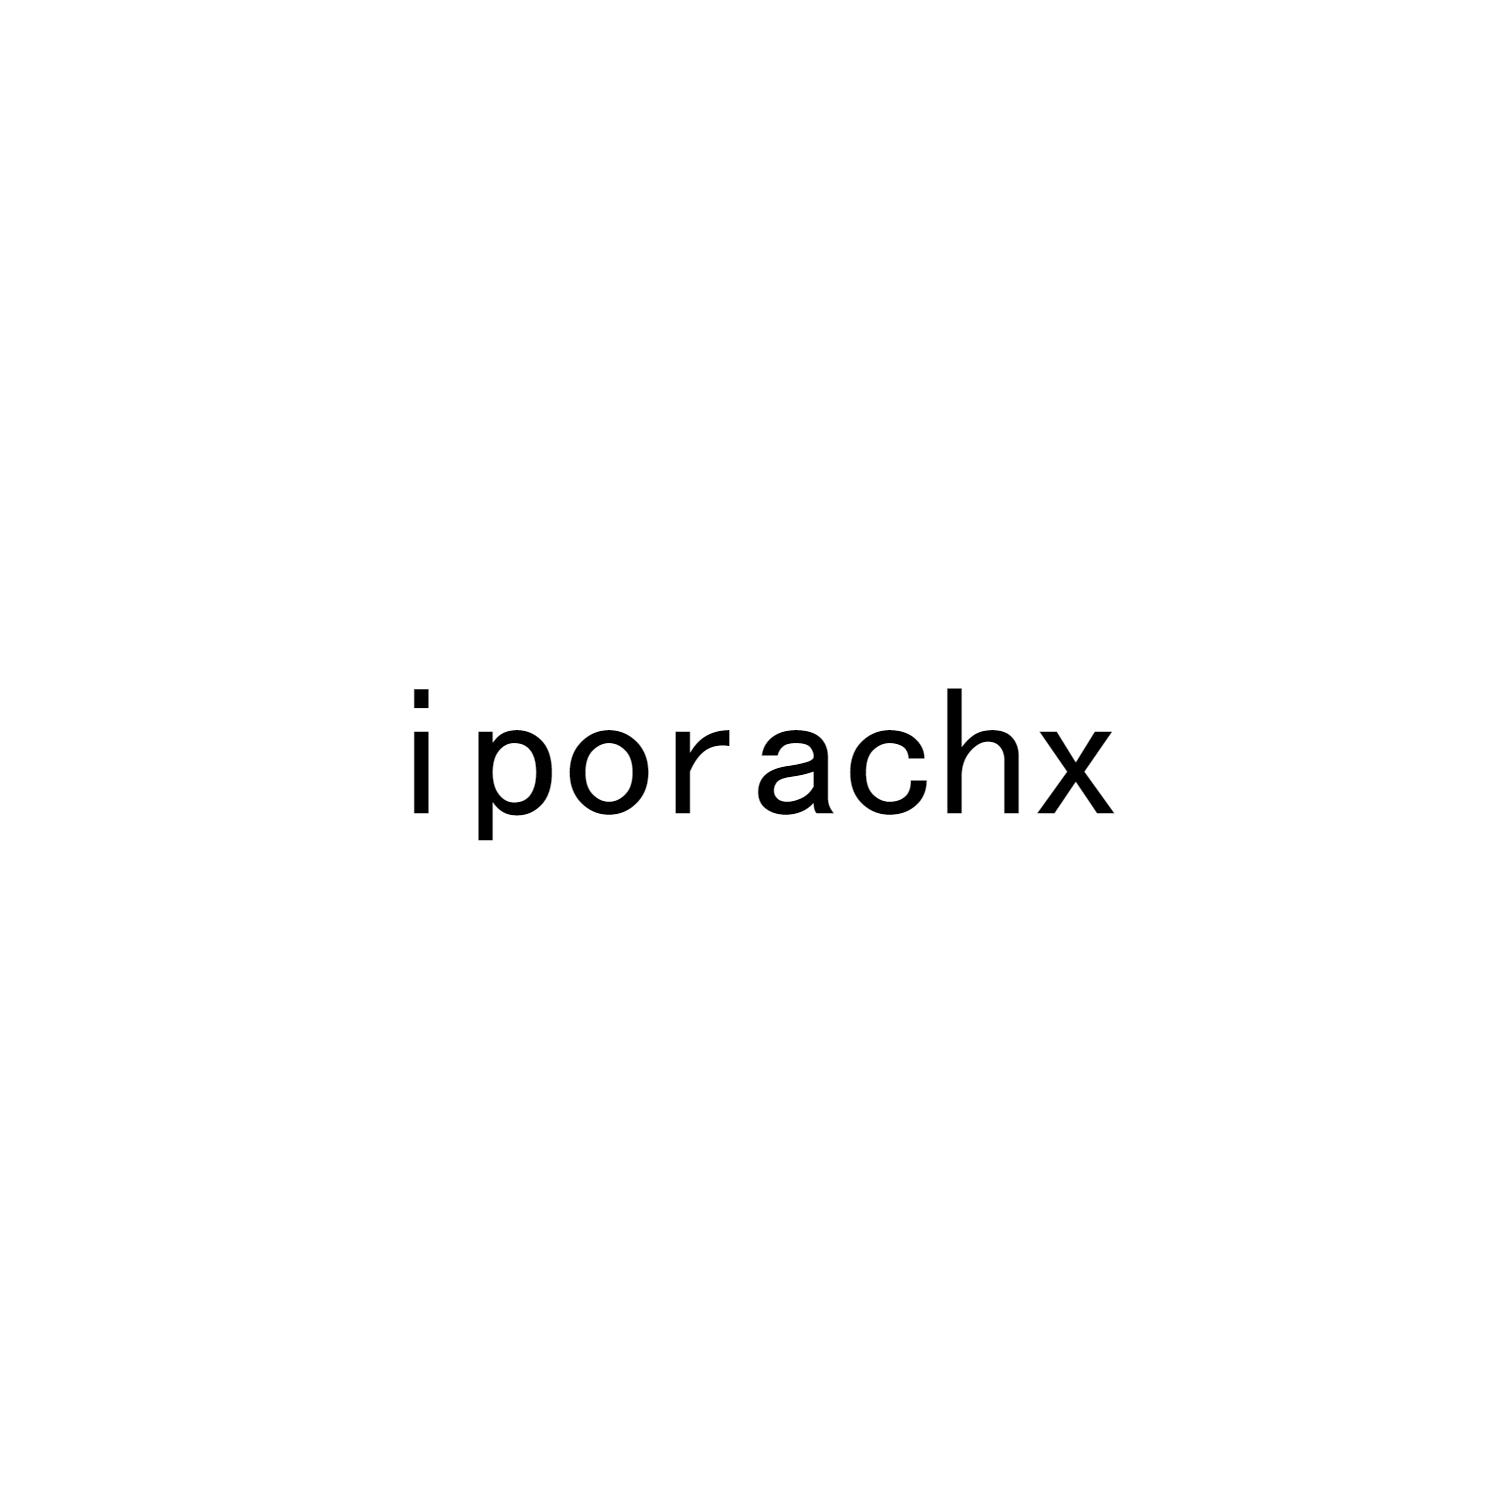 IPORACHX